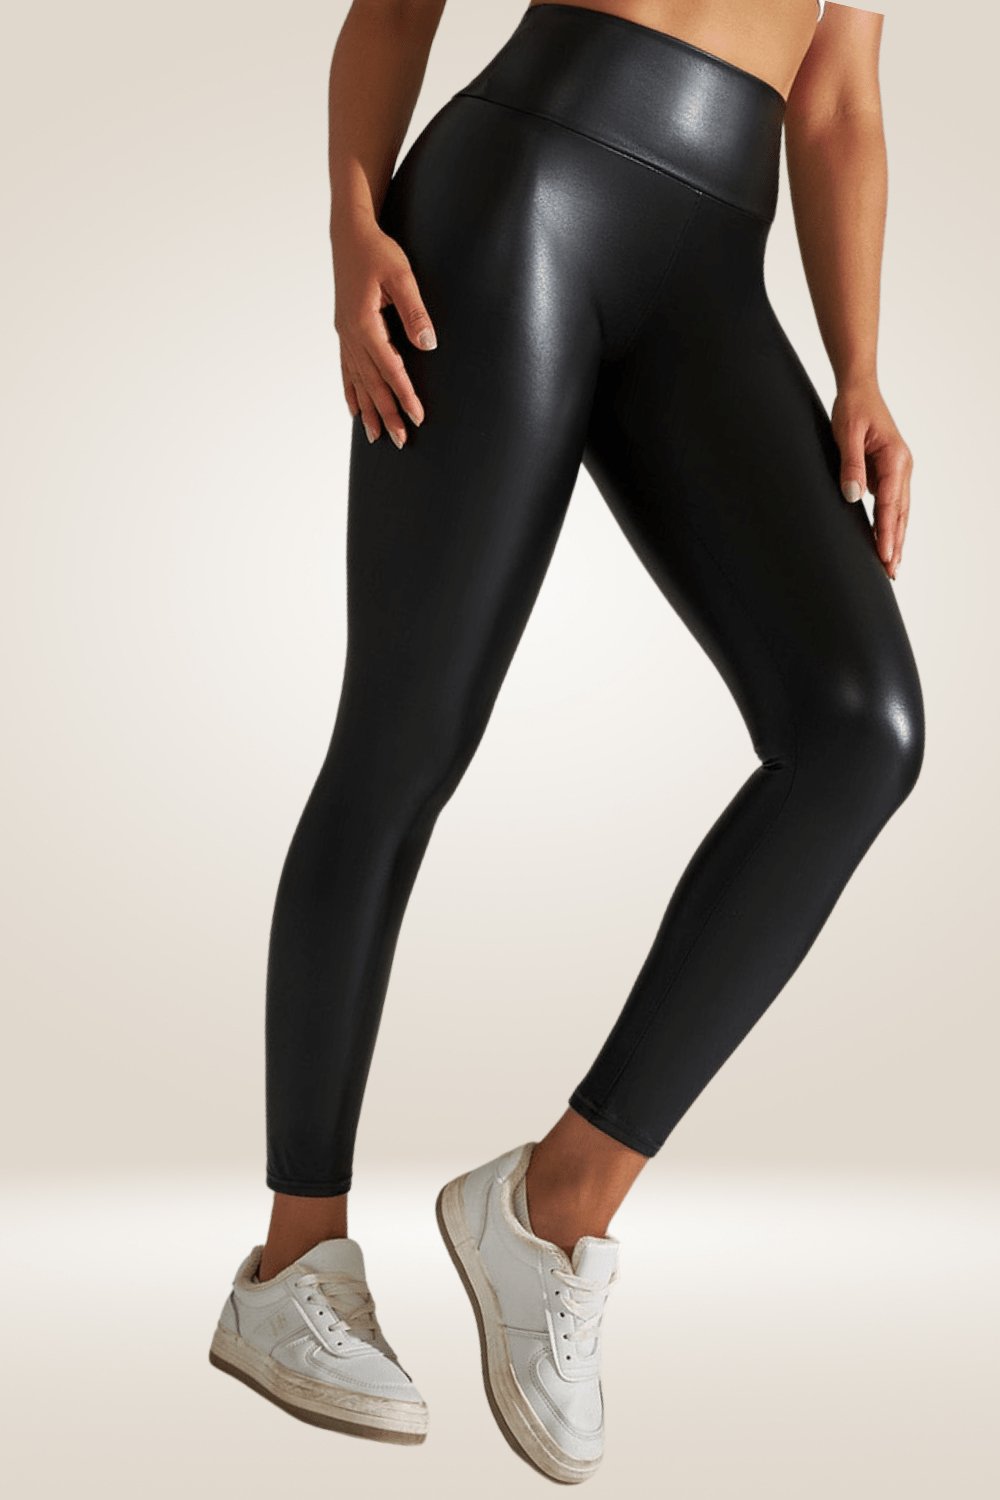 Black Faux Leather Plus Size Leggings With Pockets - TGC Boutique